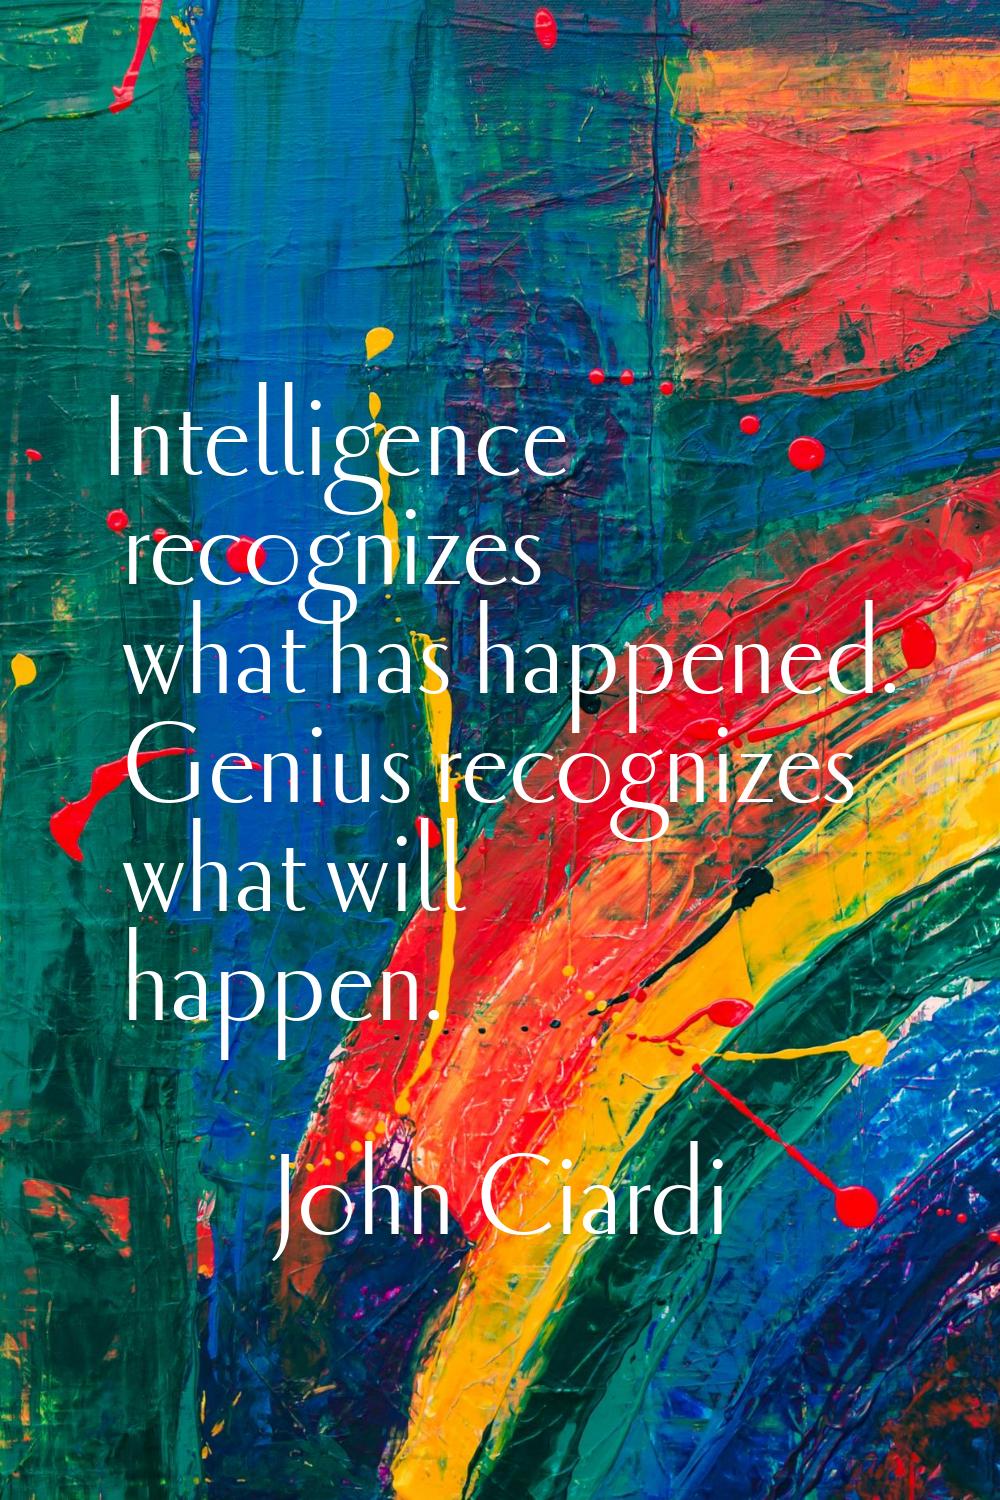 Intelligence recognizes what has happened. Genius recognizes what will happen.